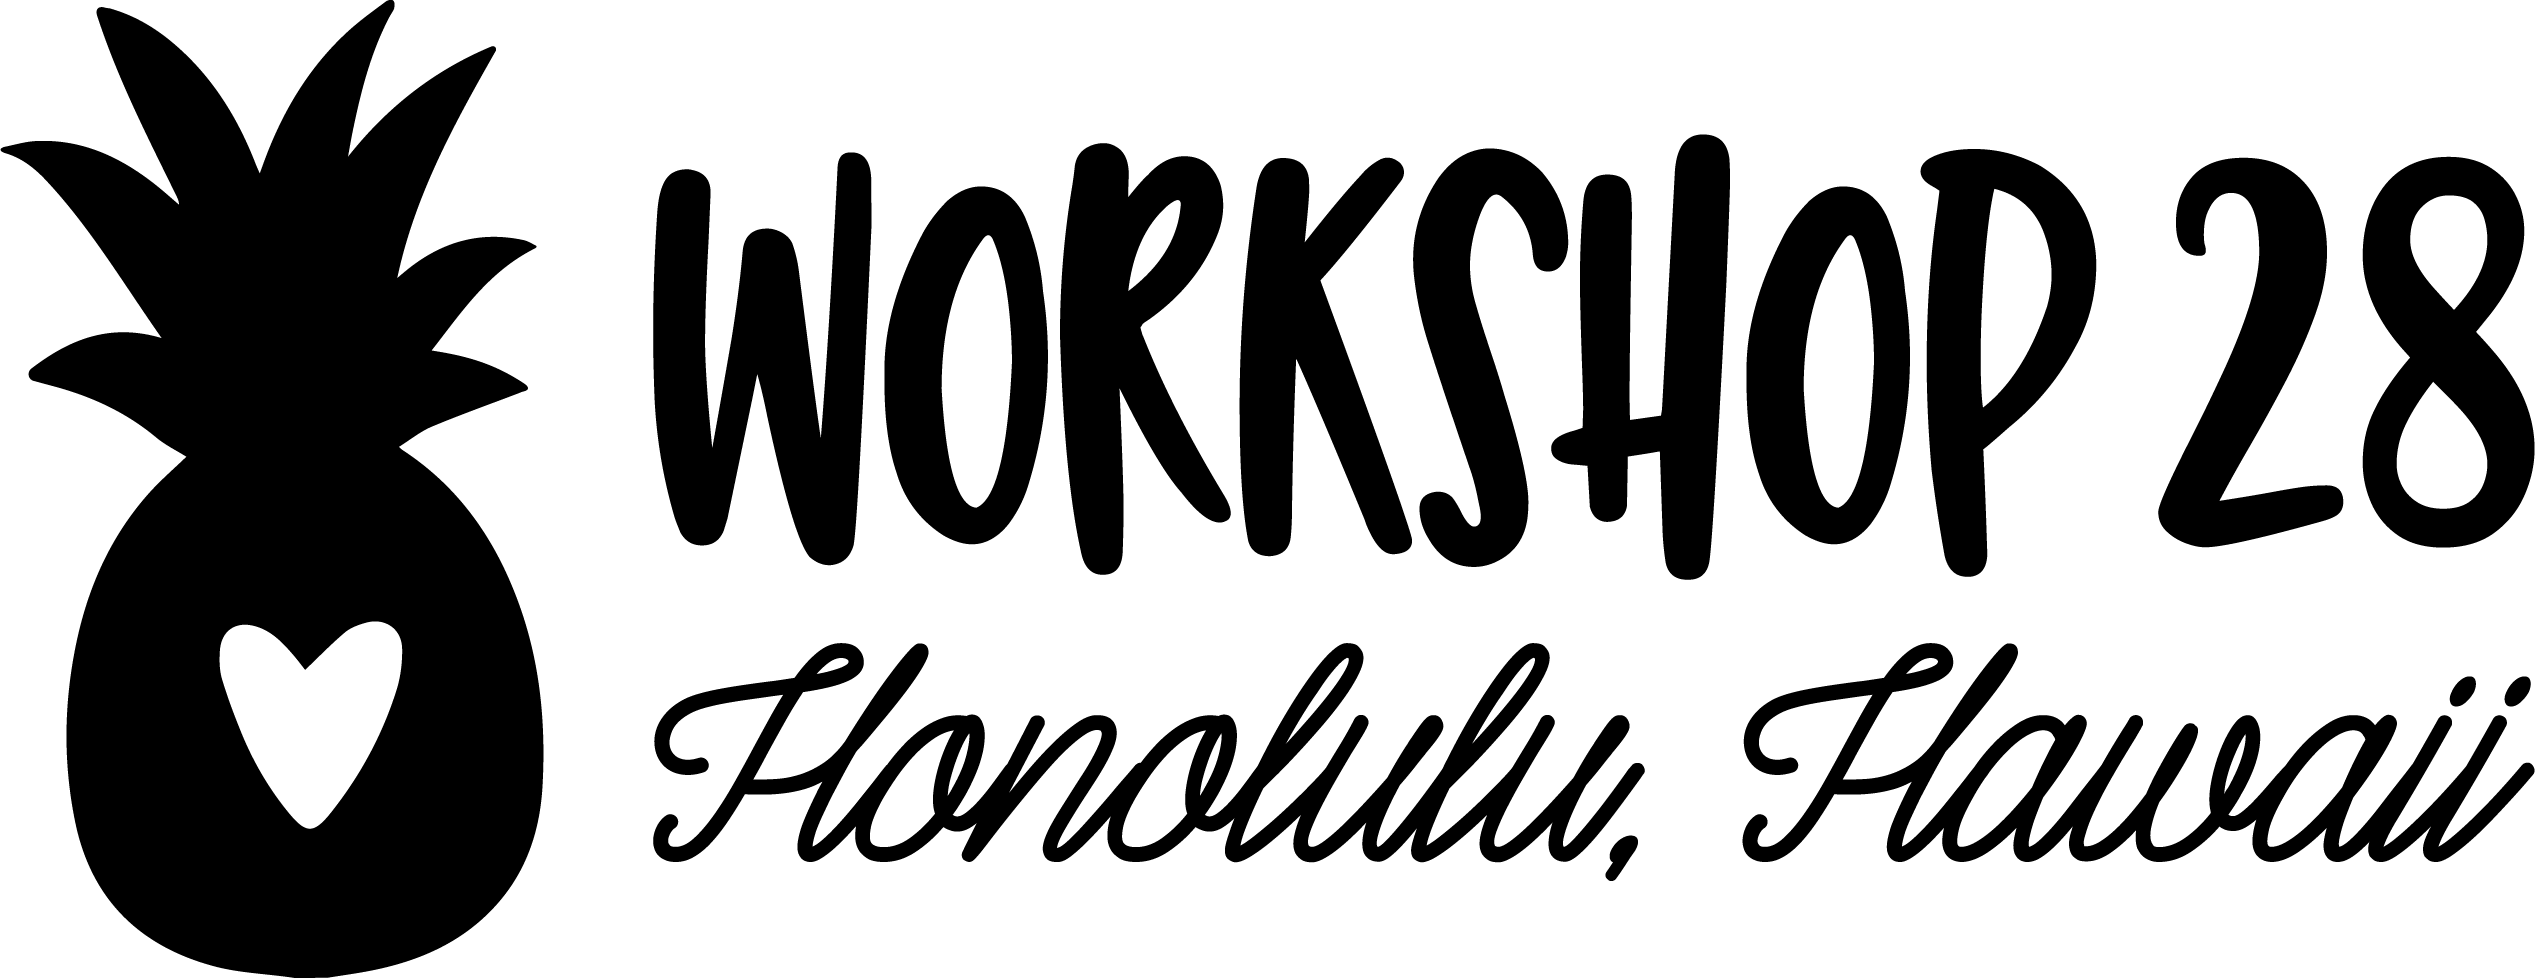 ワークショップ 28 Logo